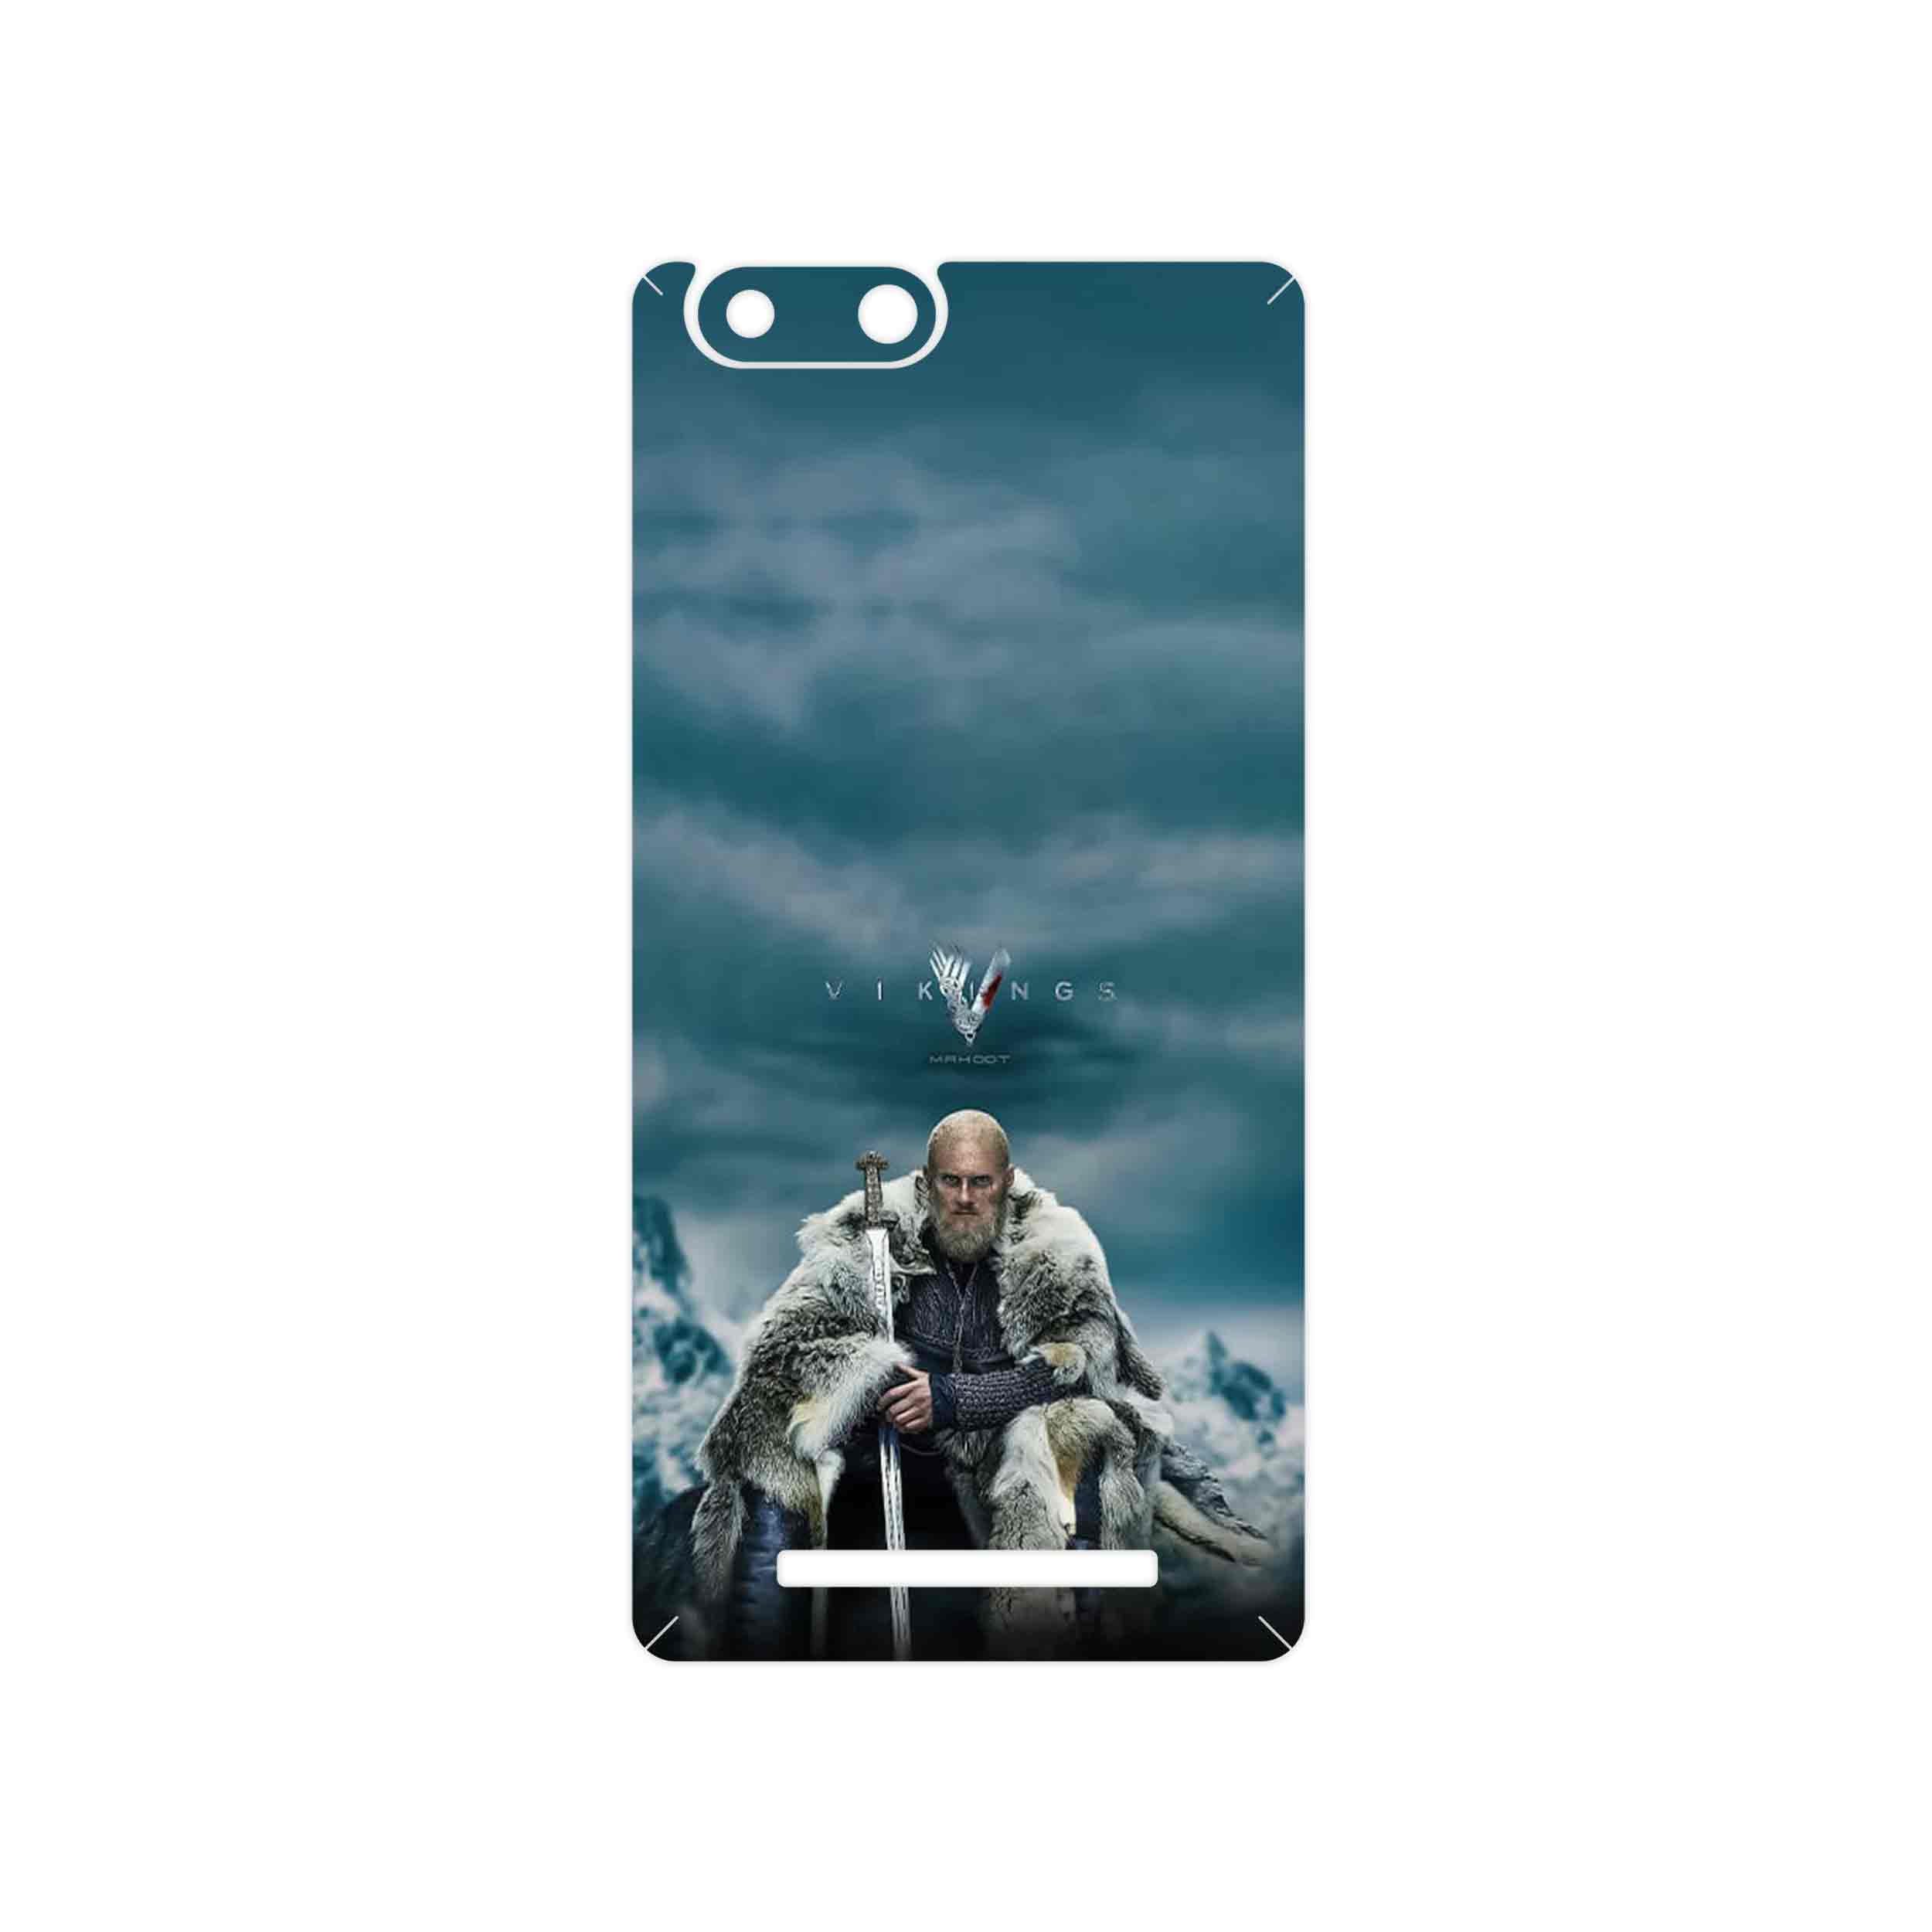 برچسب پوششی ماهوت مدل Vikings مناسب برای گوشی موبایل جی ال ایکس Pars